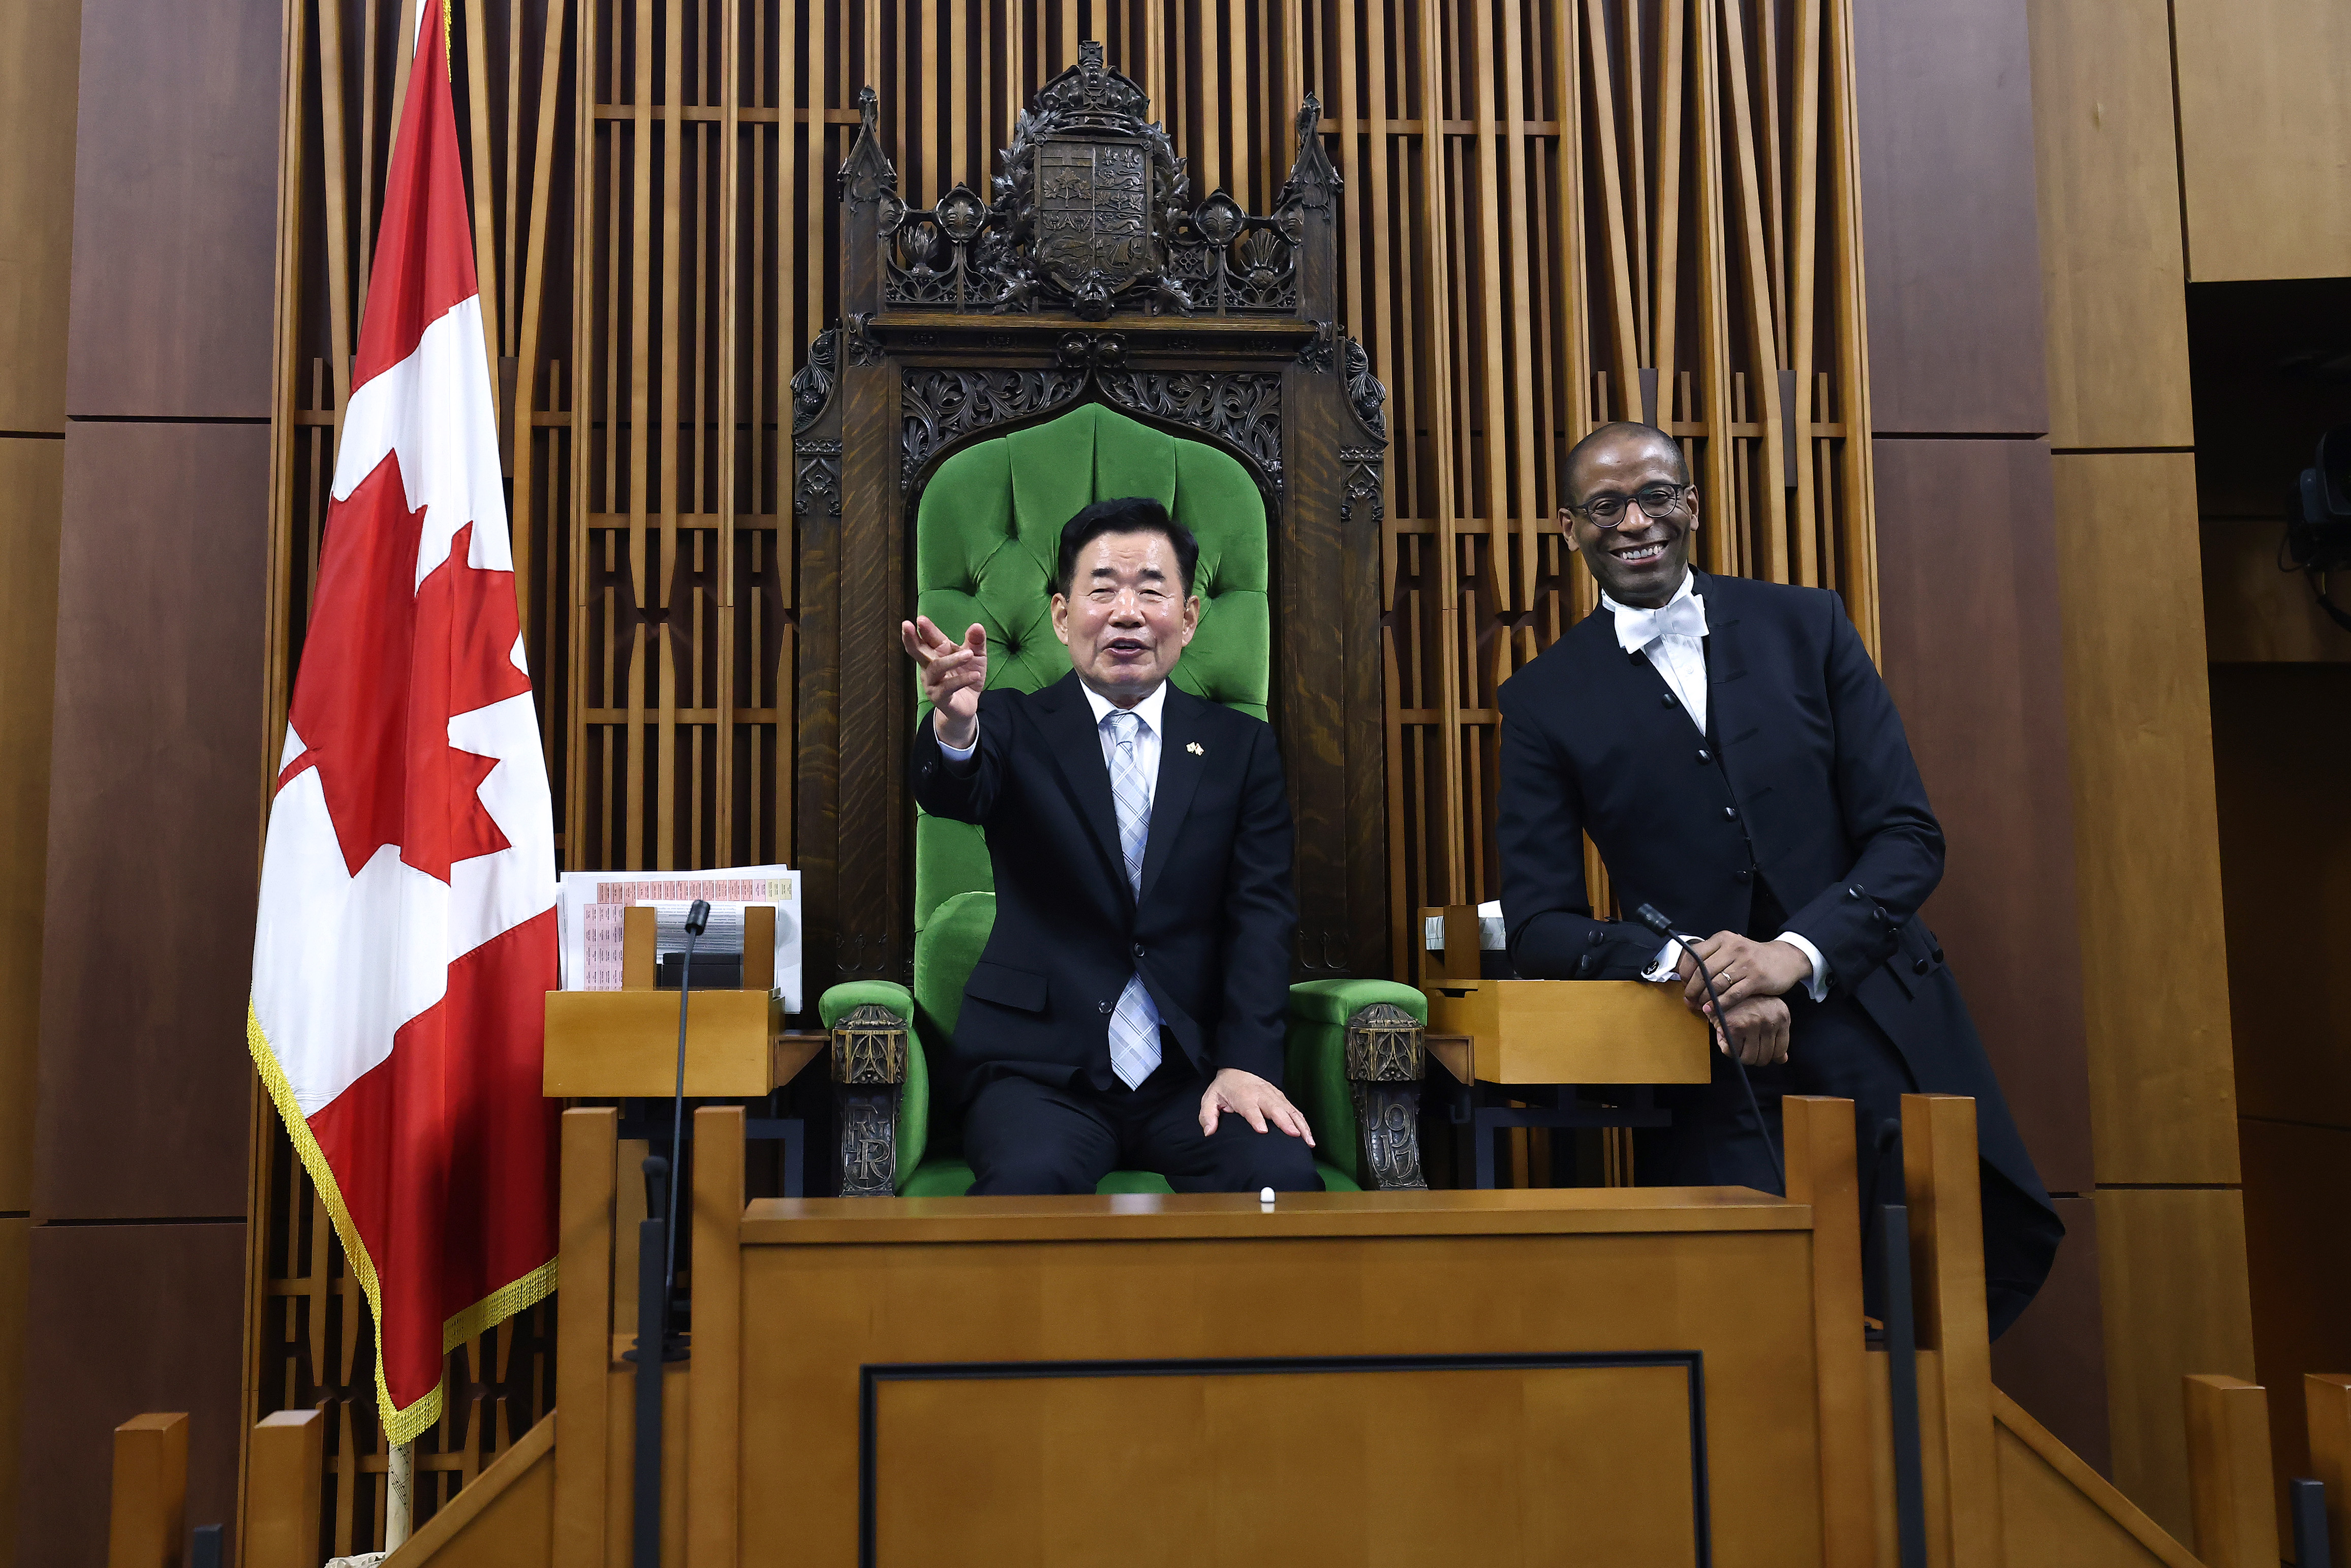 김진표 의장, 퍼거스 캐나다 하원의장과 회담(2) 관련사진 1 보기